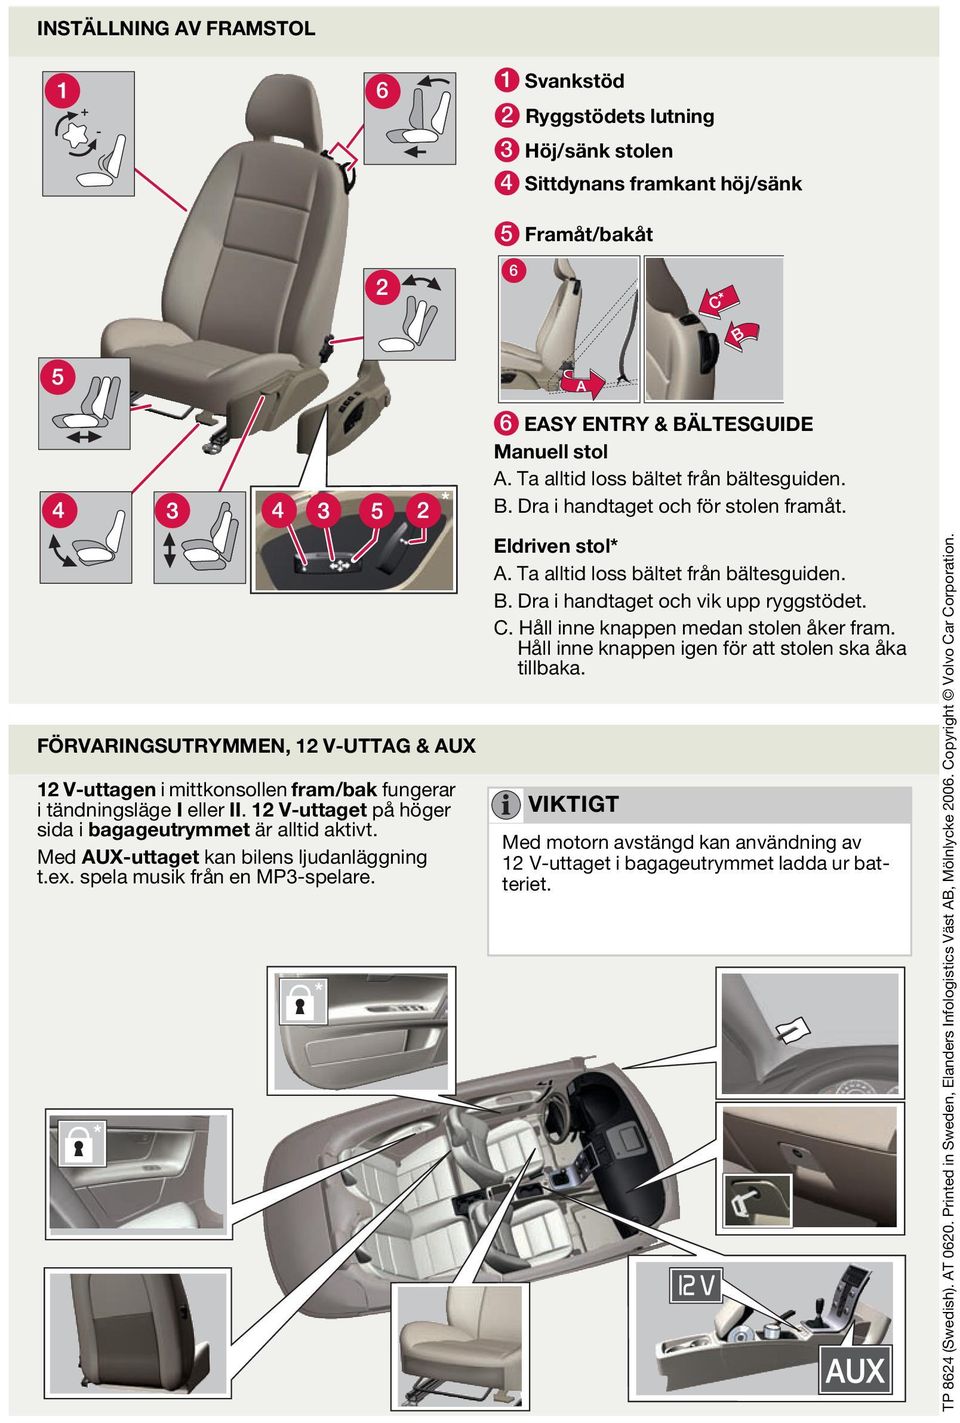 1 V-uttaget på höger sida i bagageutrymmet är alltid aktivt. Med AUX-uttaget kan bilens ljudanläggning t.ex. spela musik från en MP3-spelare. Eldriven stol* A. Ta alltid loss bältet från bältesguiden.